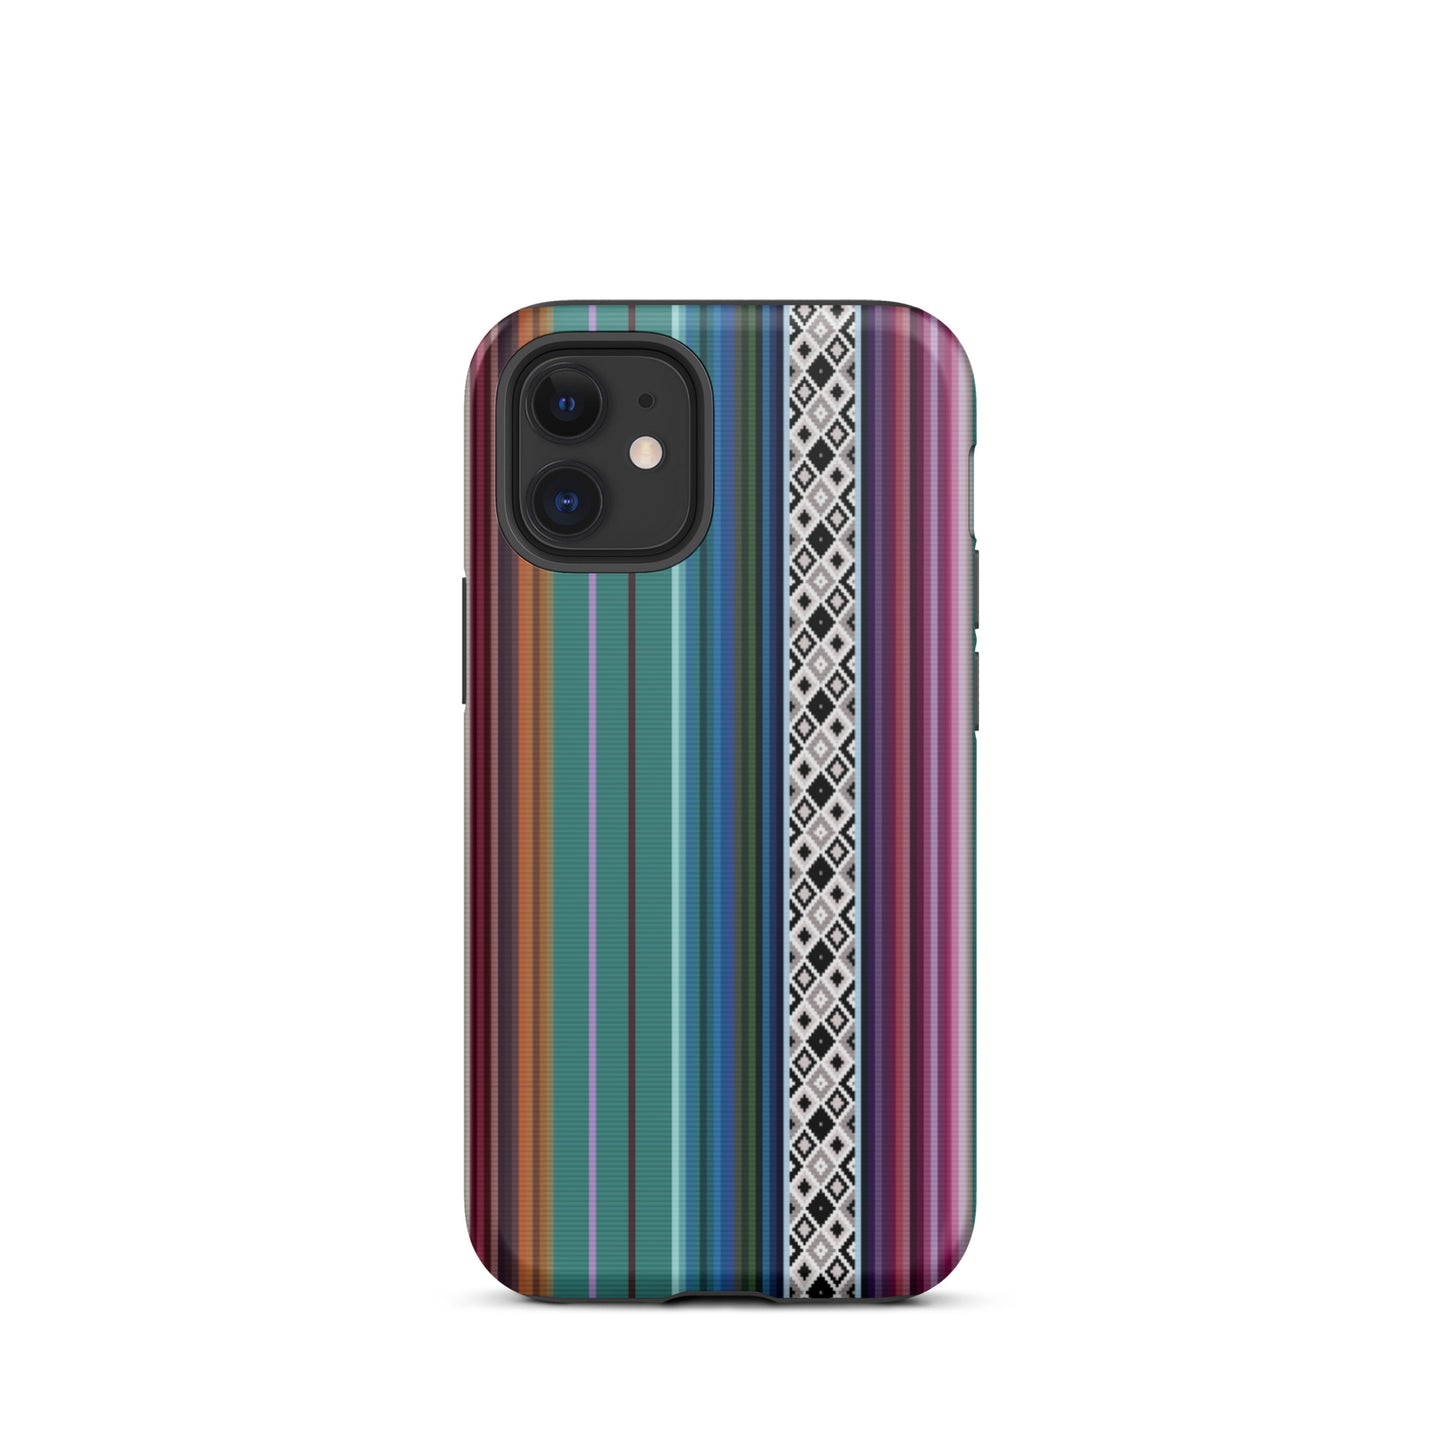 Mexican Aztec Tough iPhone 12 mini case